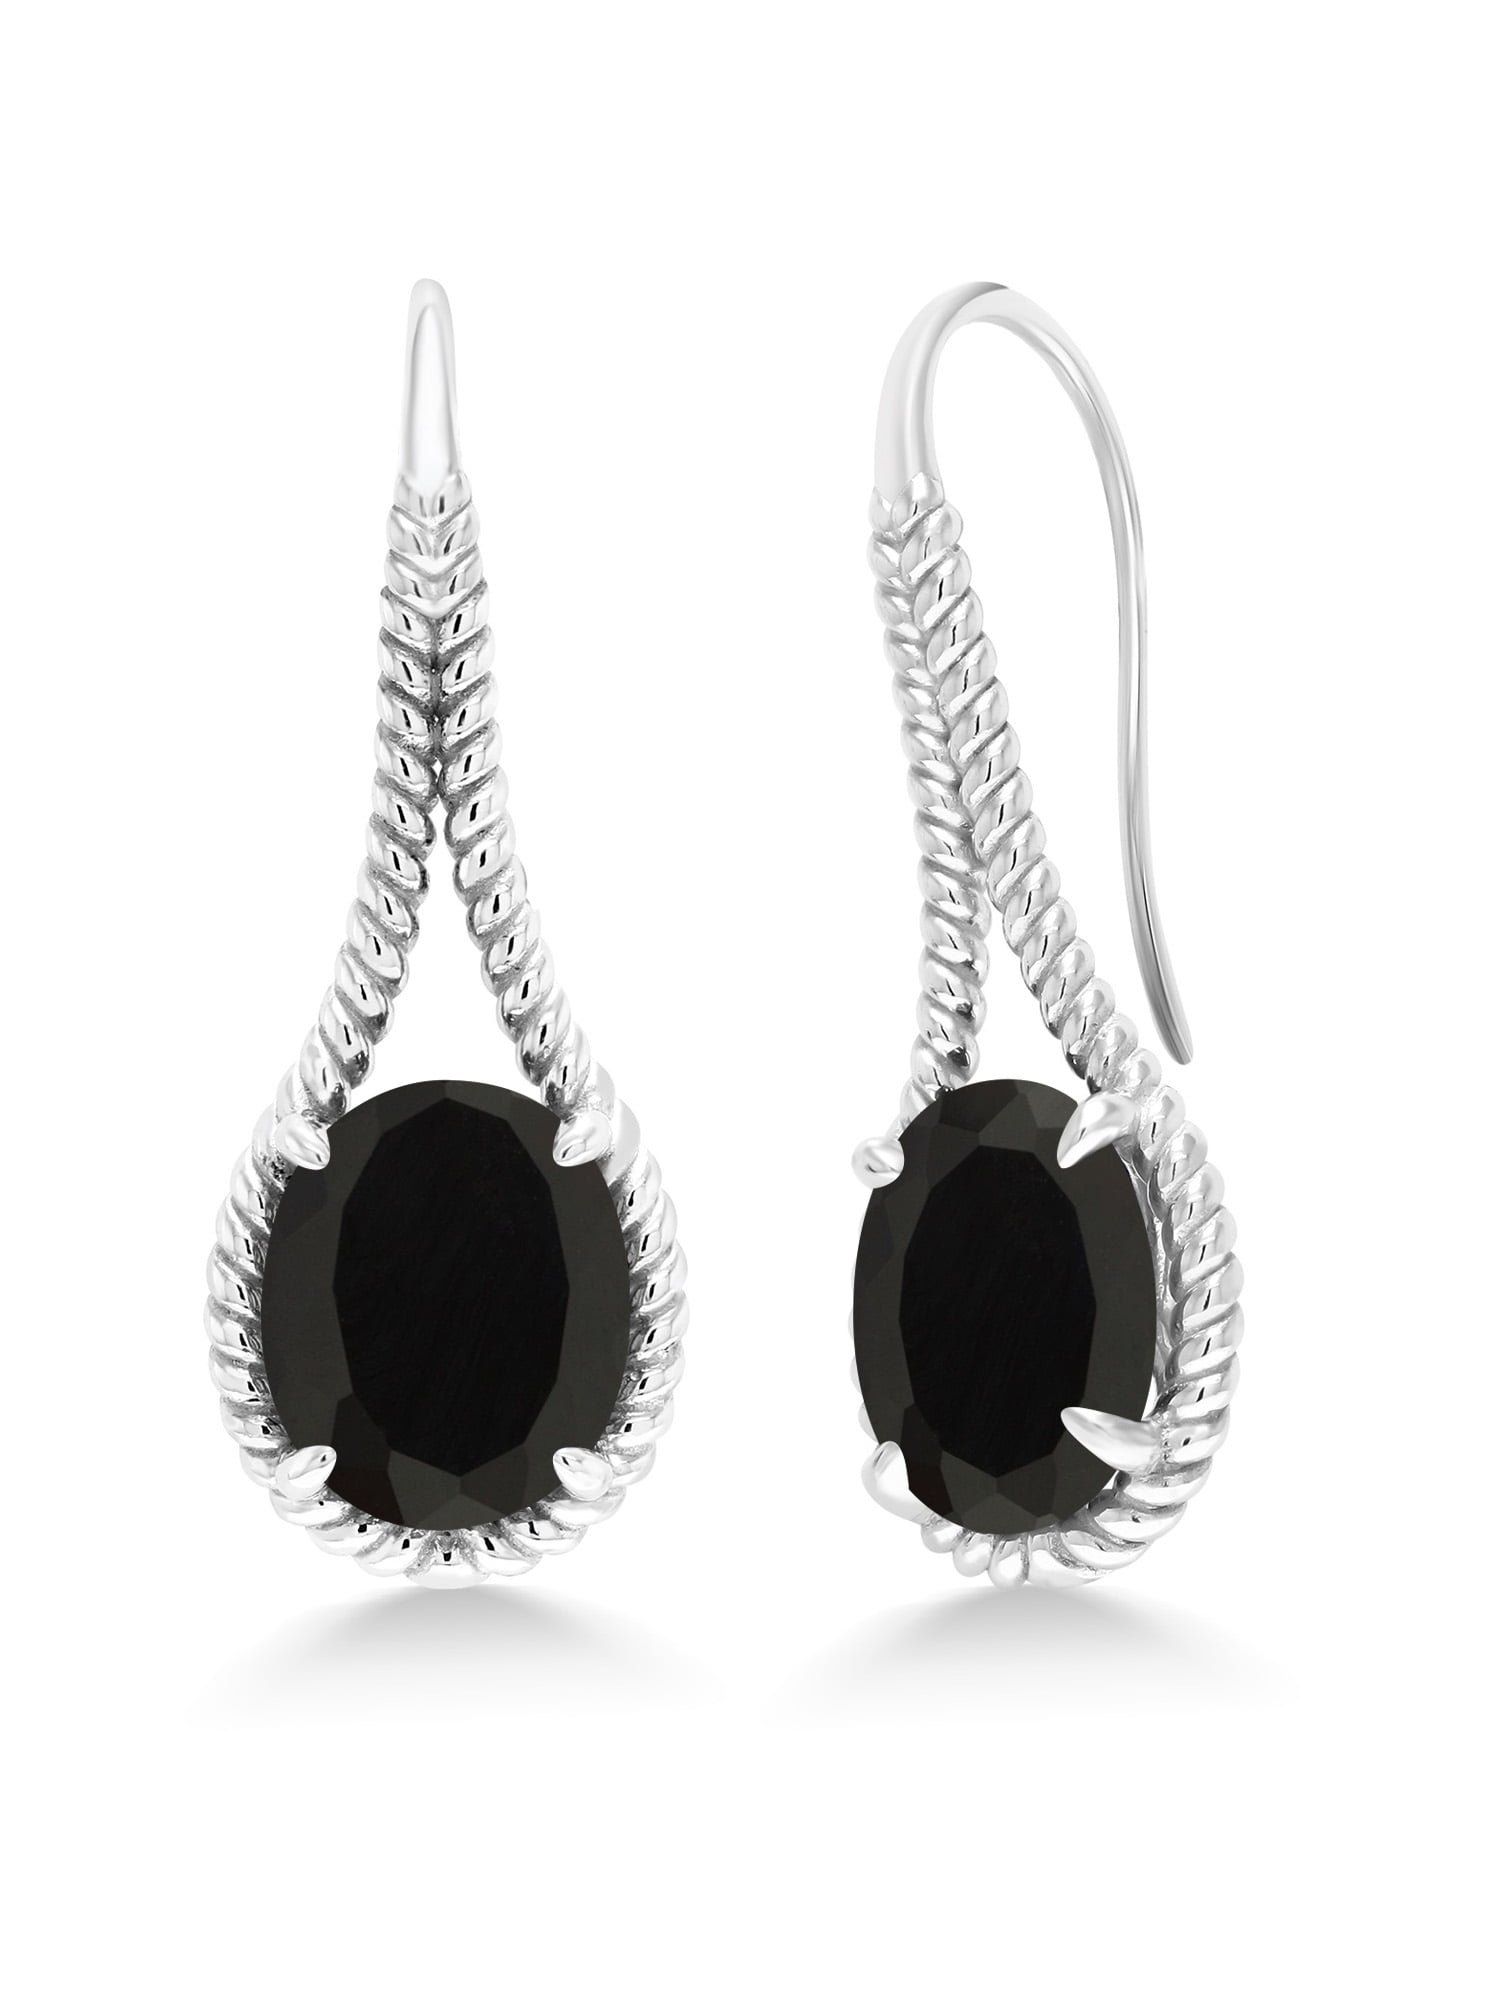 Black Onyx Gemstone Minimal Drop Earrings 925 Sterling Silver